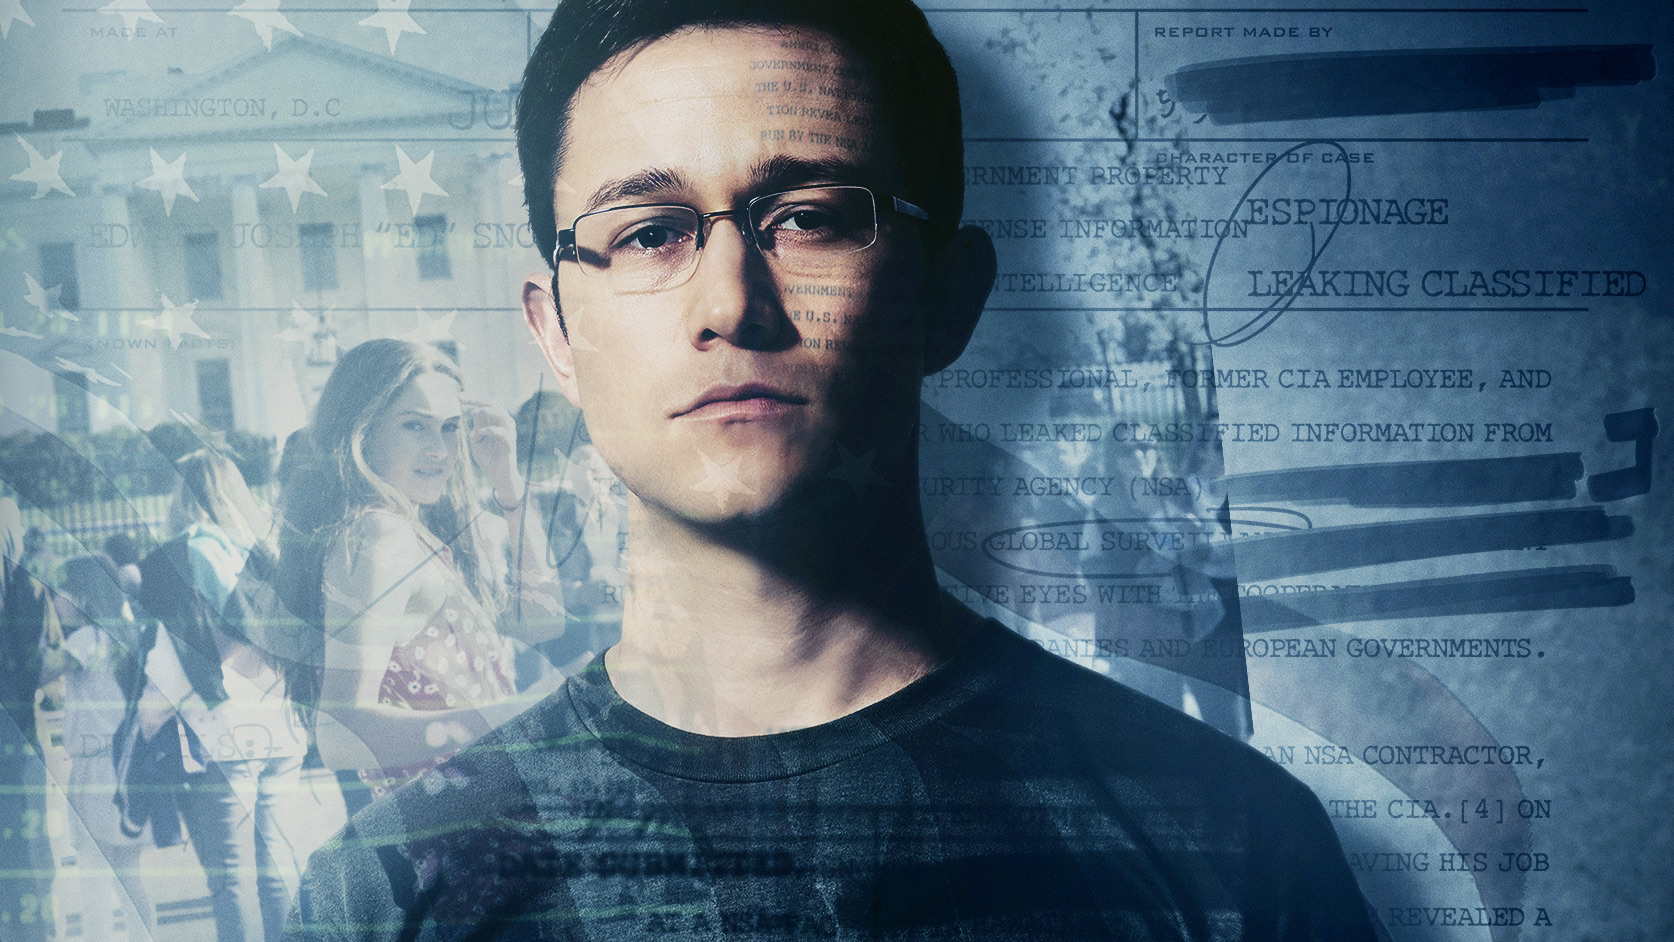 Σινεμά | Βλέποντας το Snowden (Σνόουντεν) λίγο μετά την ανακοίνωση του Meta από τον Ζούκερμπεργκ